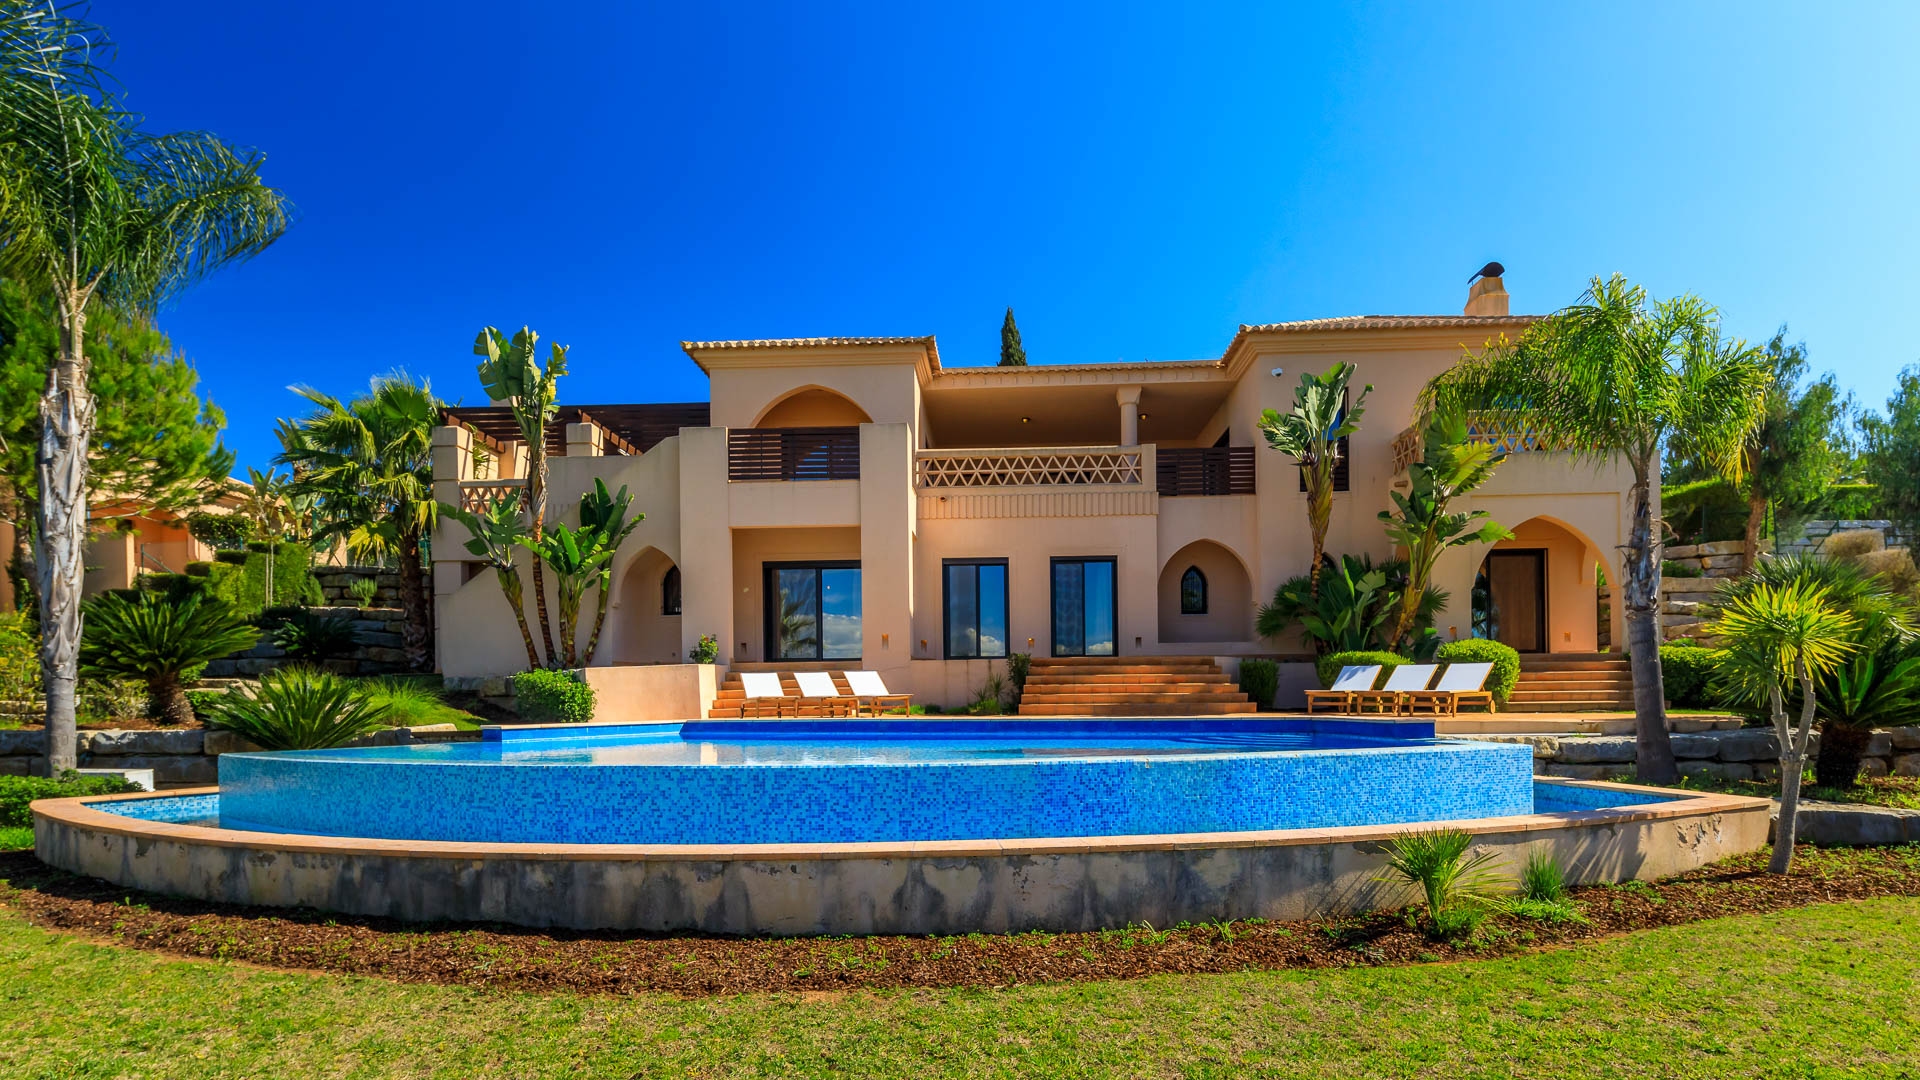 Freistehende Luxusvilla mit 4 SZ im Golf-Resort,  Alcantarilha | LG440 Diese Villa ist die perfekte, schlüsselfertige Immobilie für jeden, der sich im Urlaub wie zu Hause fühlen möchte oder der ein sichere Investition sucht.
